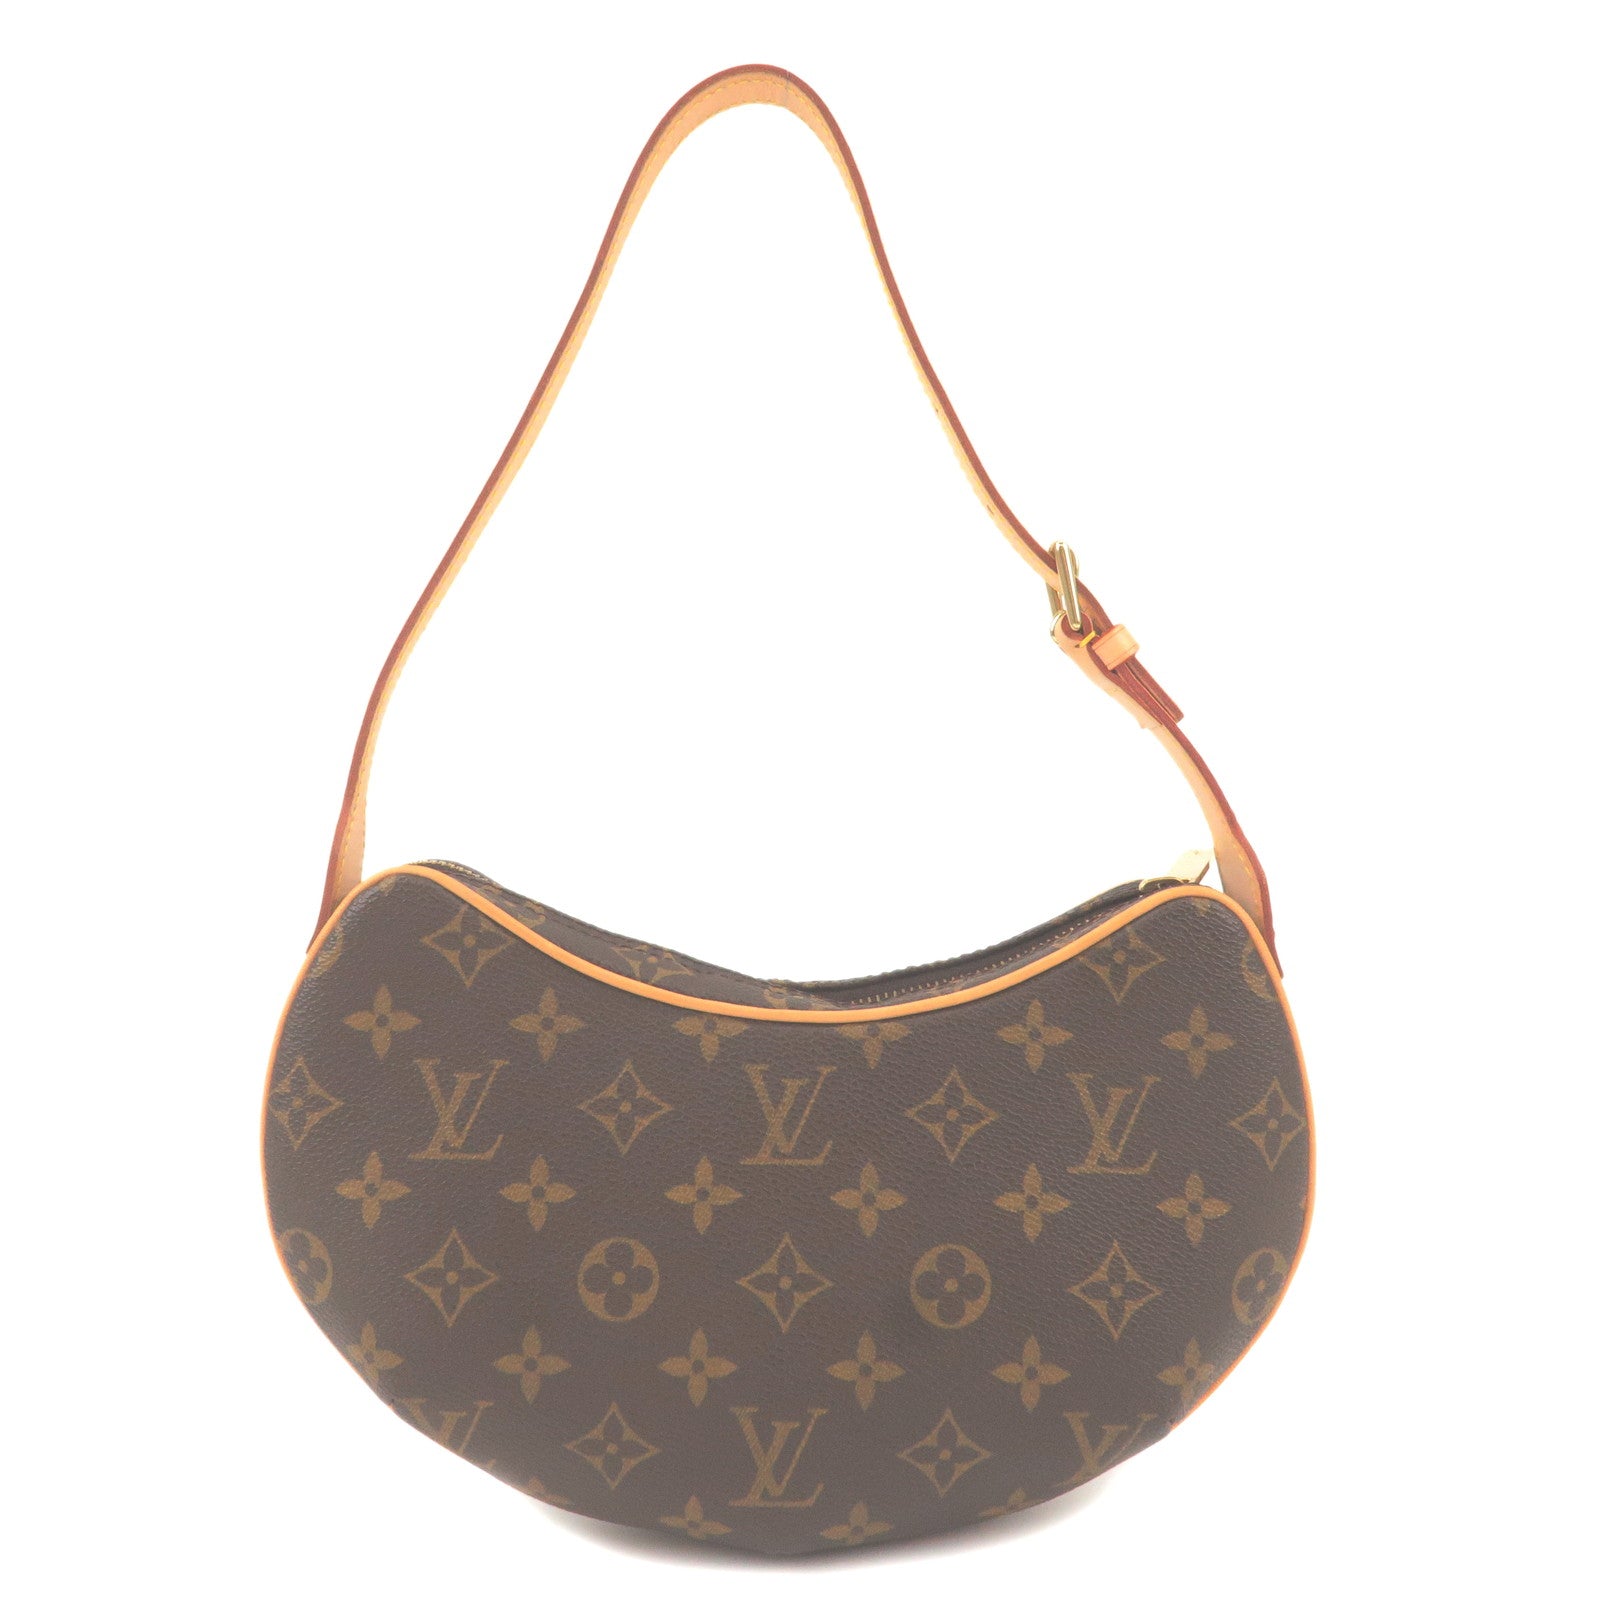 Louis Vuitton Croissant Handbag